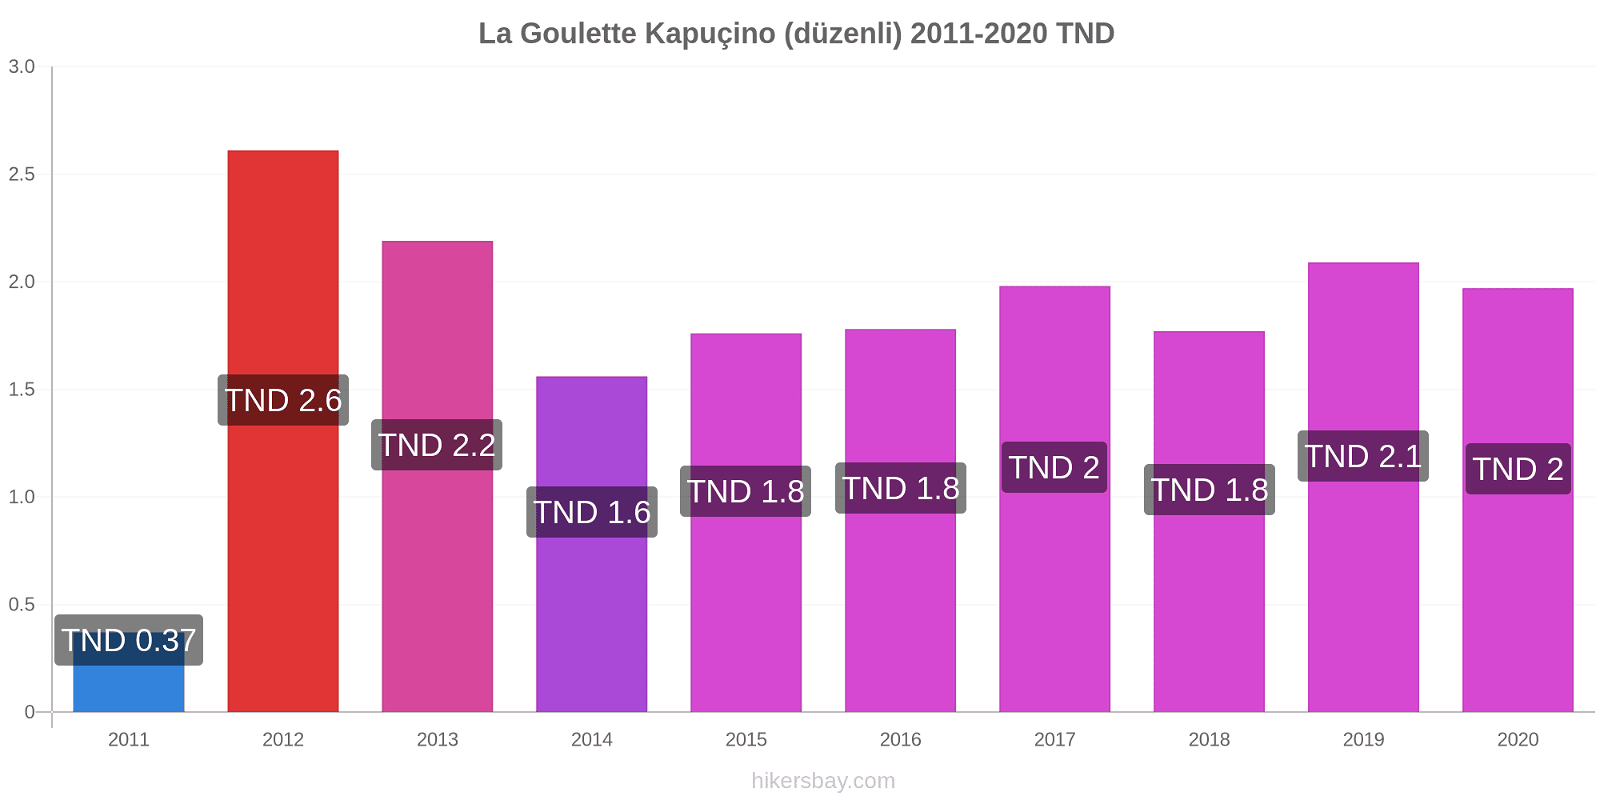 La Goulette fiyat değişiklikleri Kapuçino (düzenli) hikersbay.com